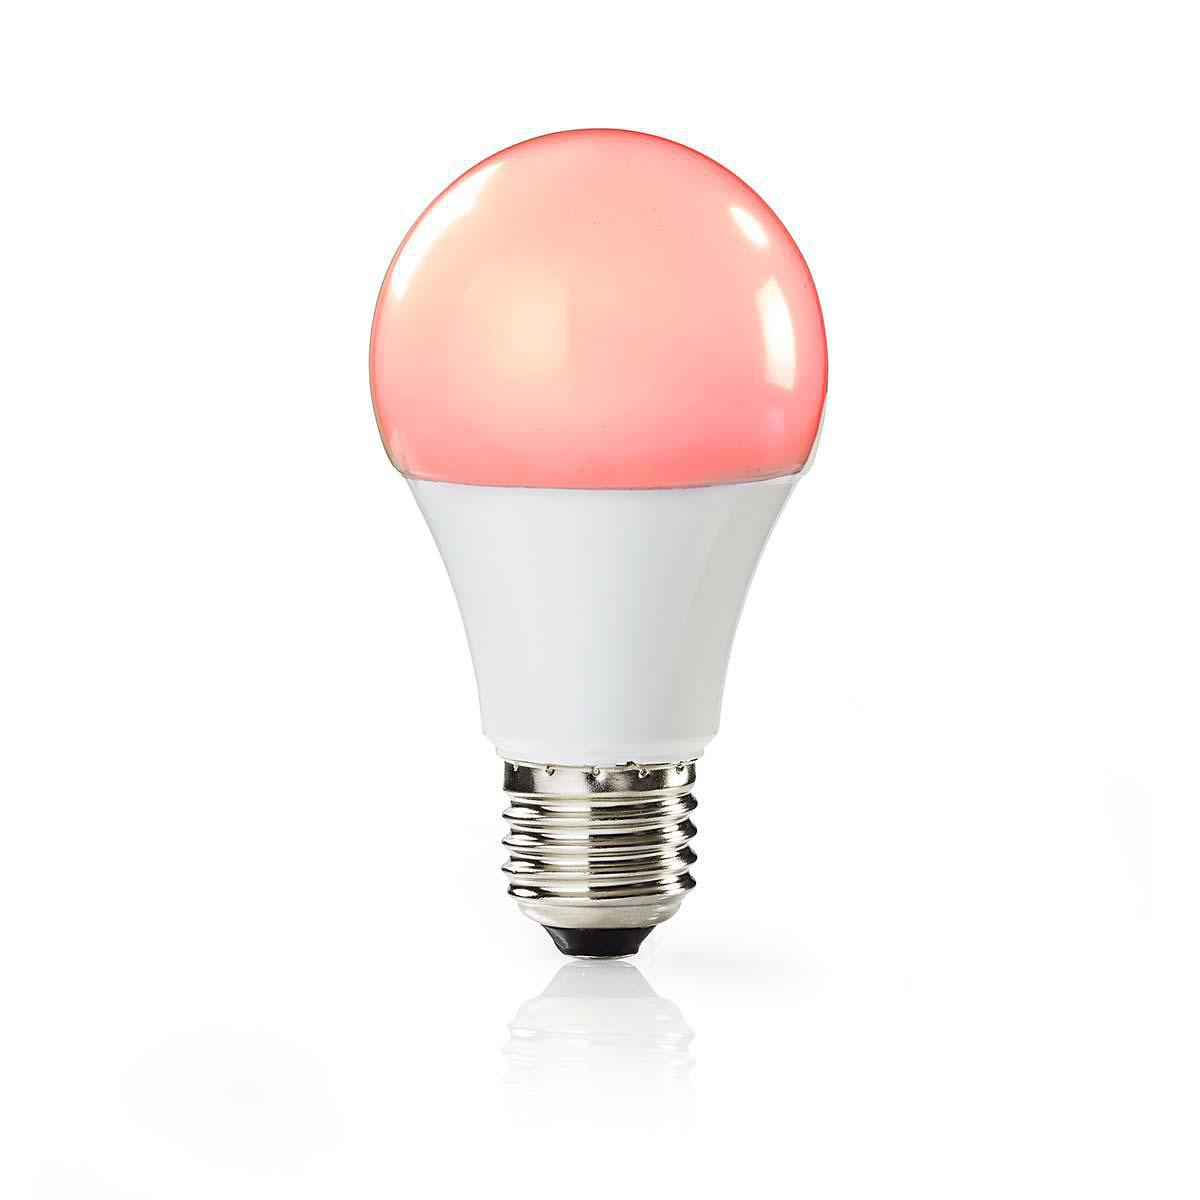 Nedis WiFi Smart LED-lampor E27 - Fullfärg och varmvitt, 2-pack